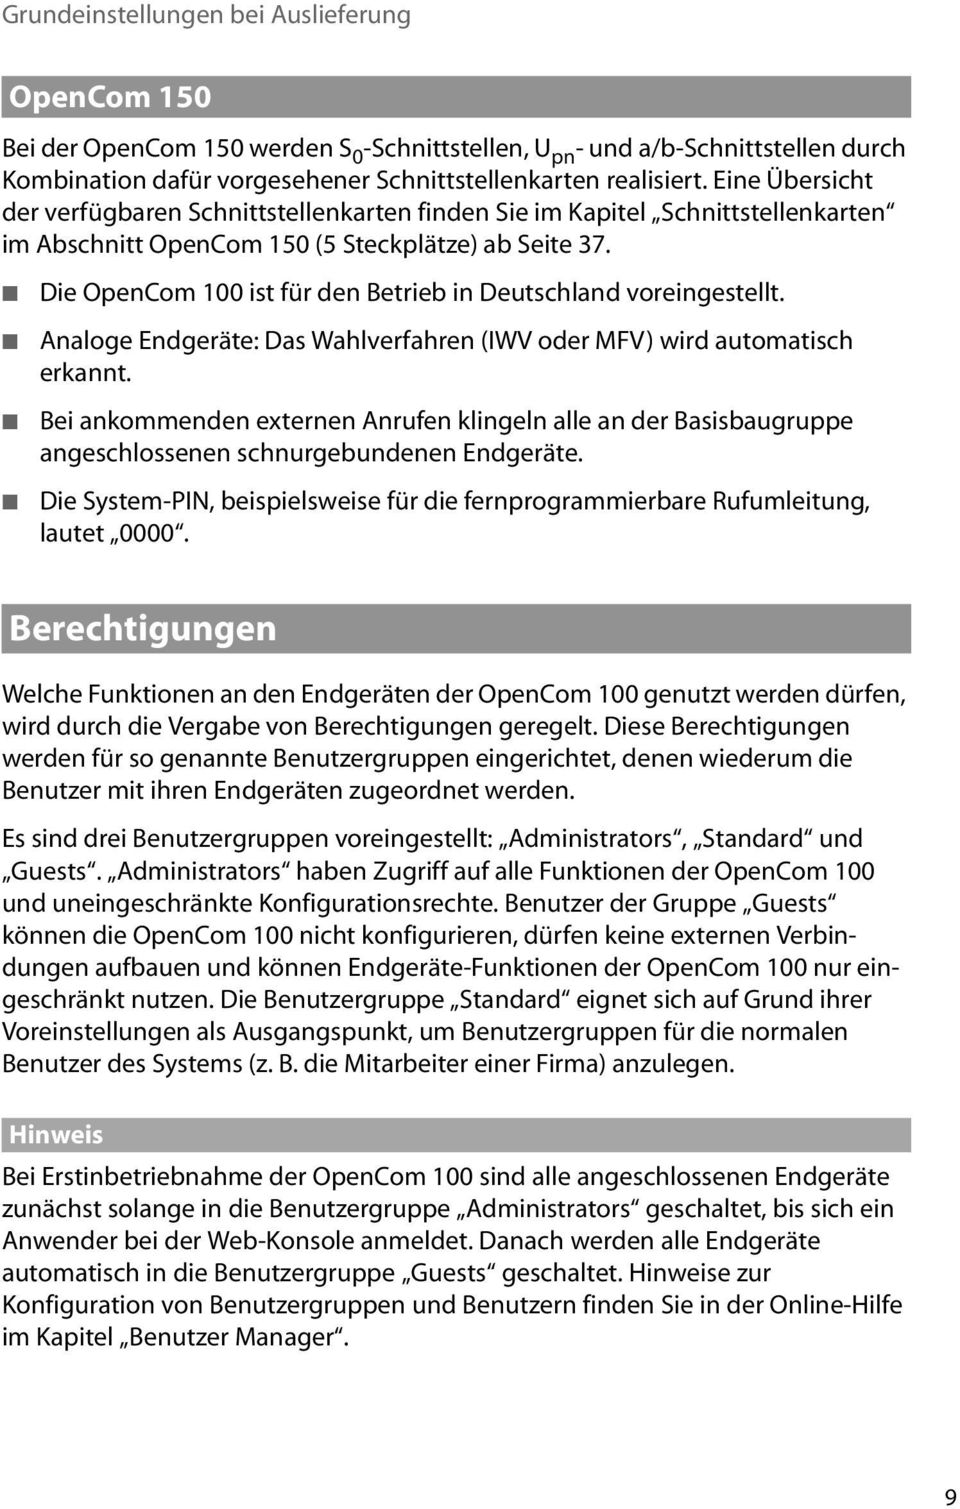 Die OpenCom 100 ist für den Betrieb in Deutschland voreingestellt. Analoge Endgeräte: Das Wahlverfahren (IWV oder MFV) wird automatisch erkannt.